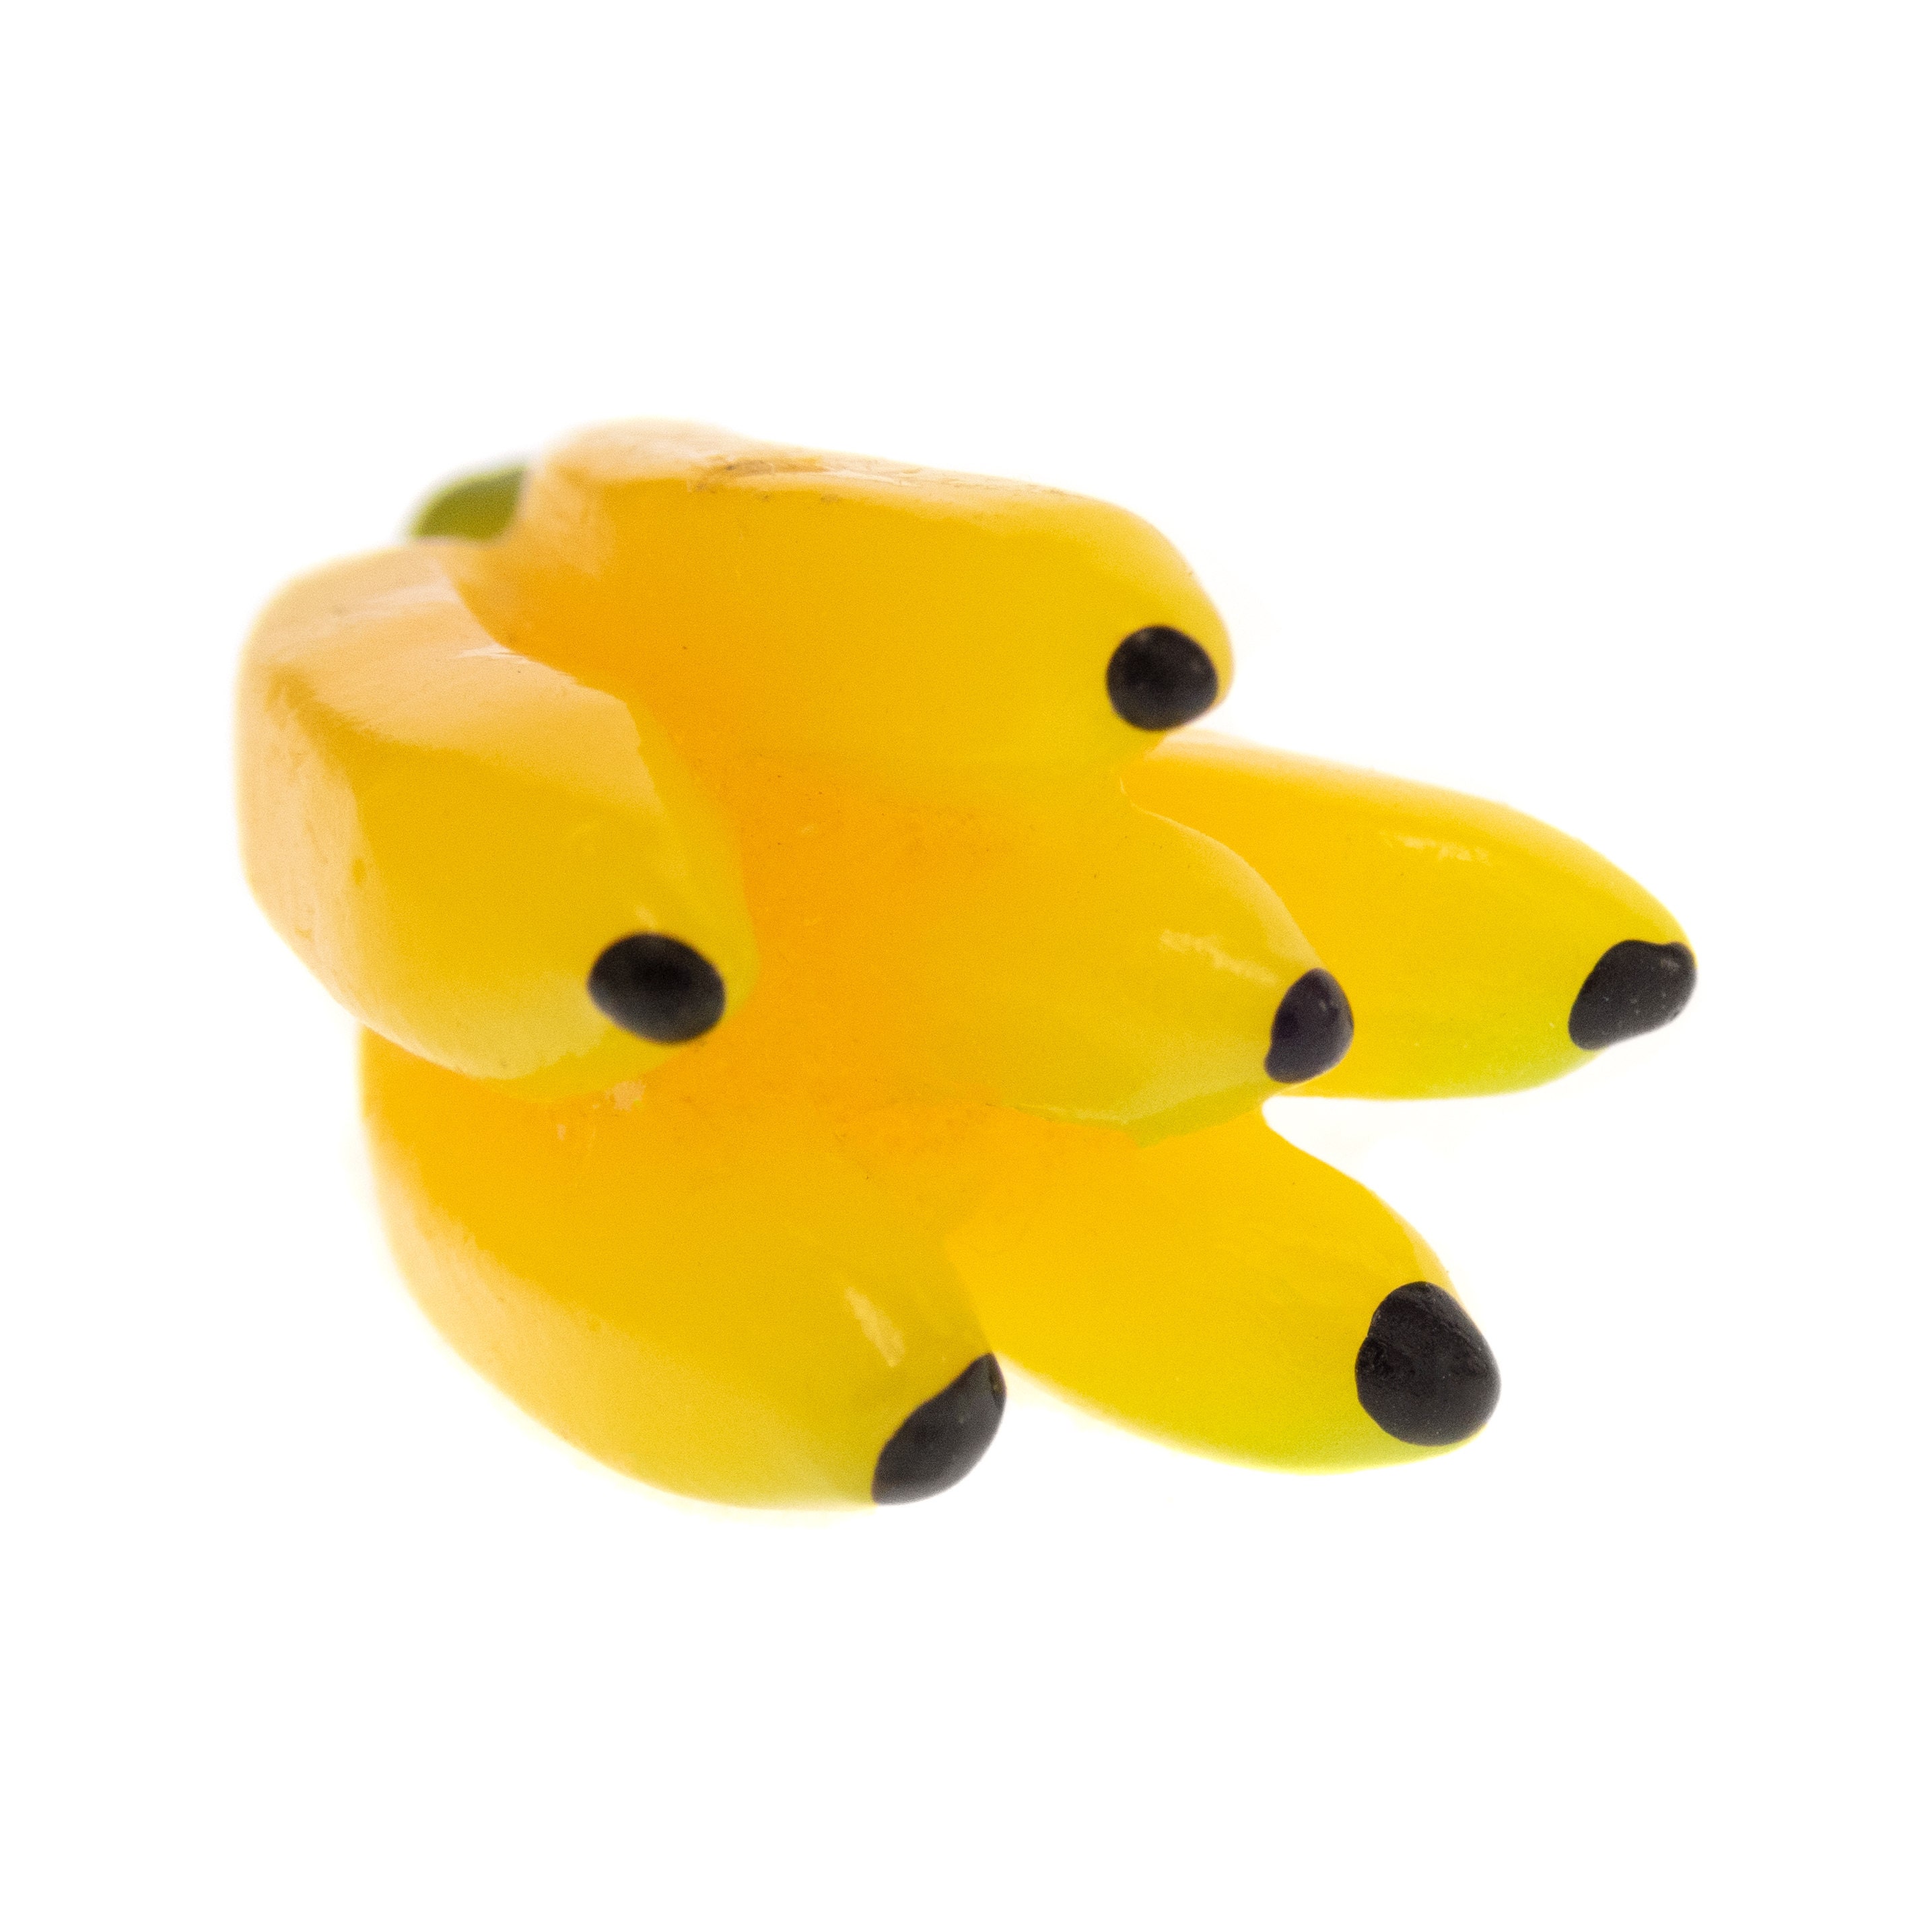 Banana Fruit Earrings Yellow. Cute Novelty Dangle Earrings